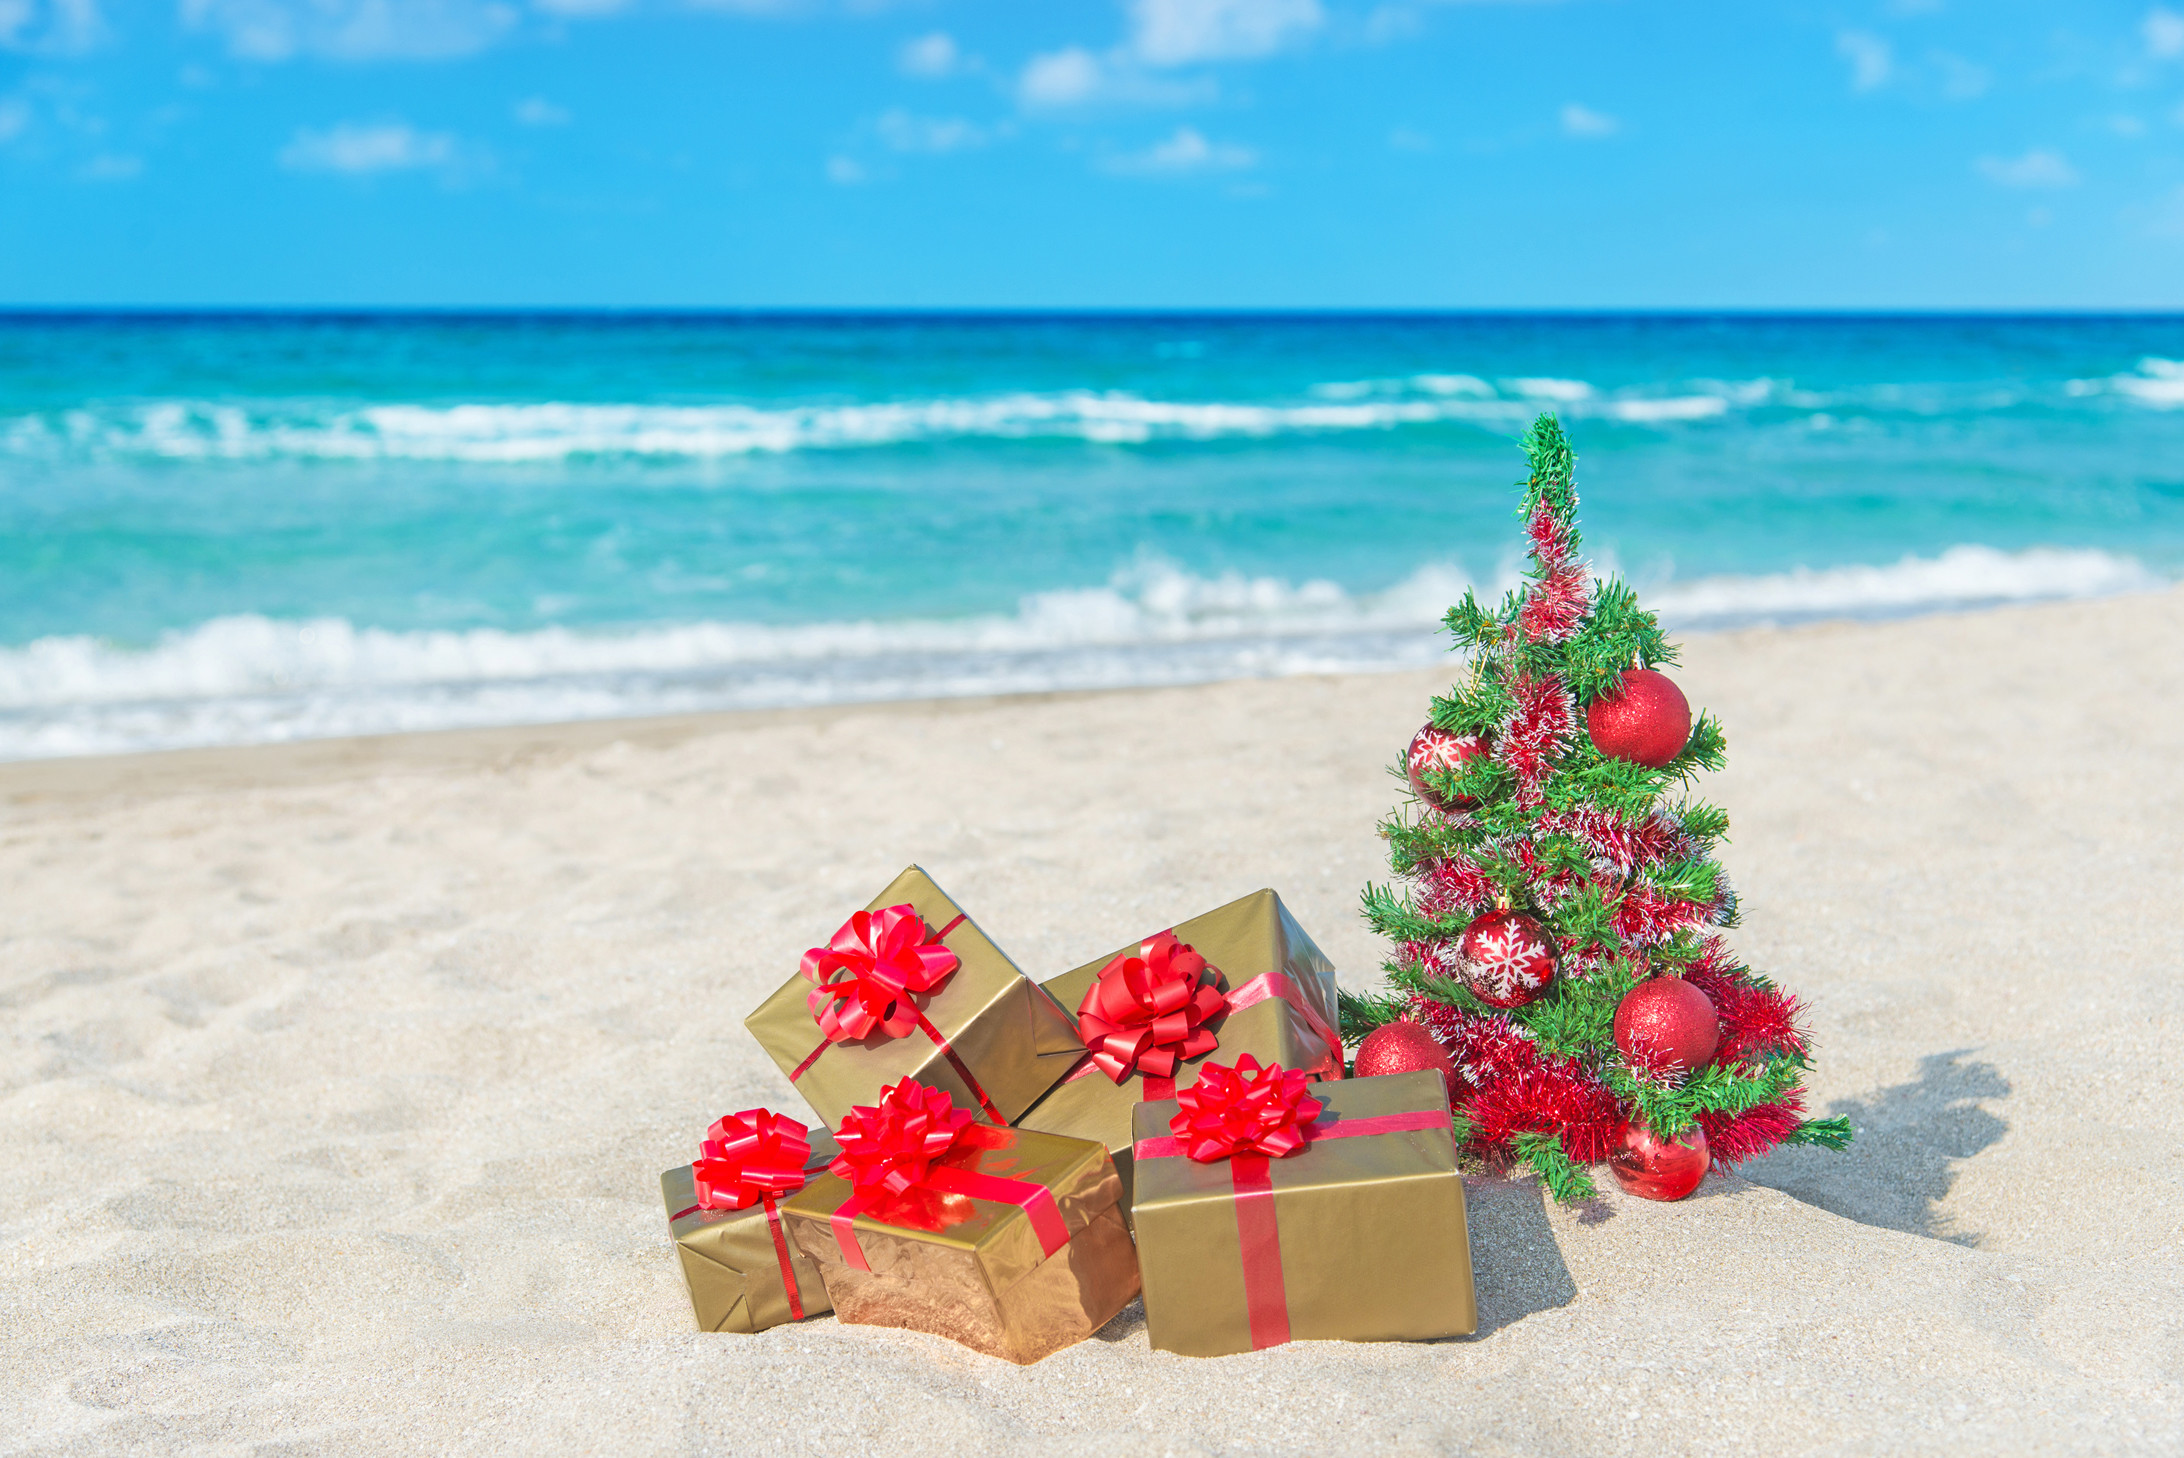 navidad playa fondo de pantalla,decoración navideña,vacaciones,verano,playa,planta